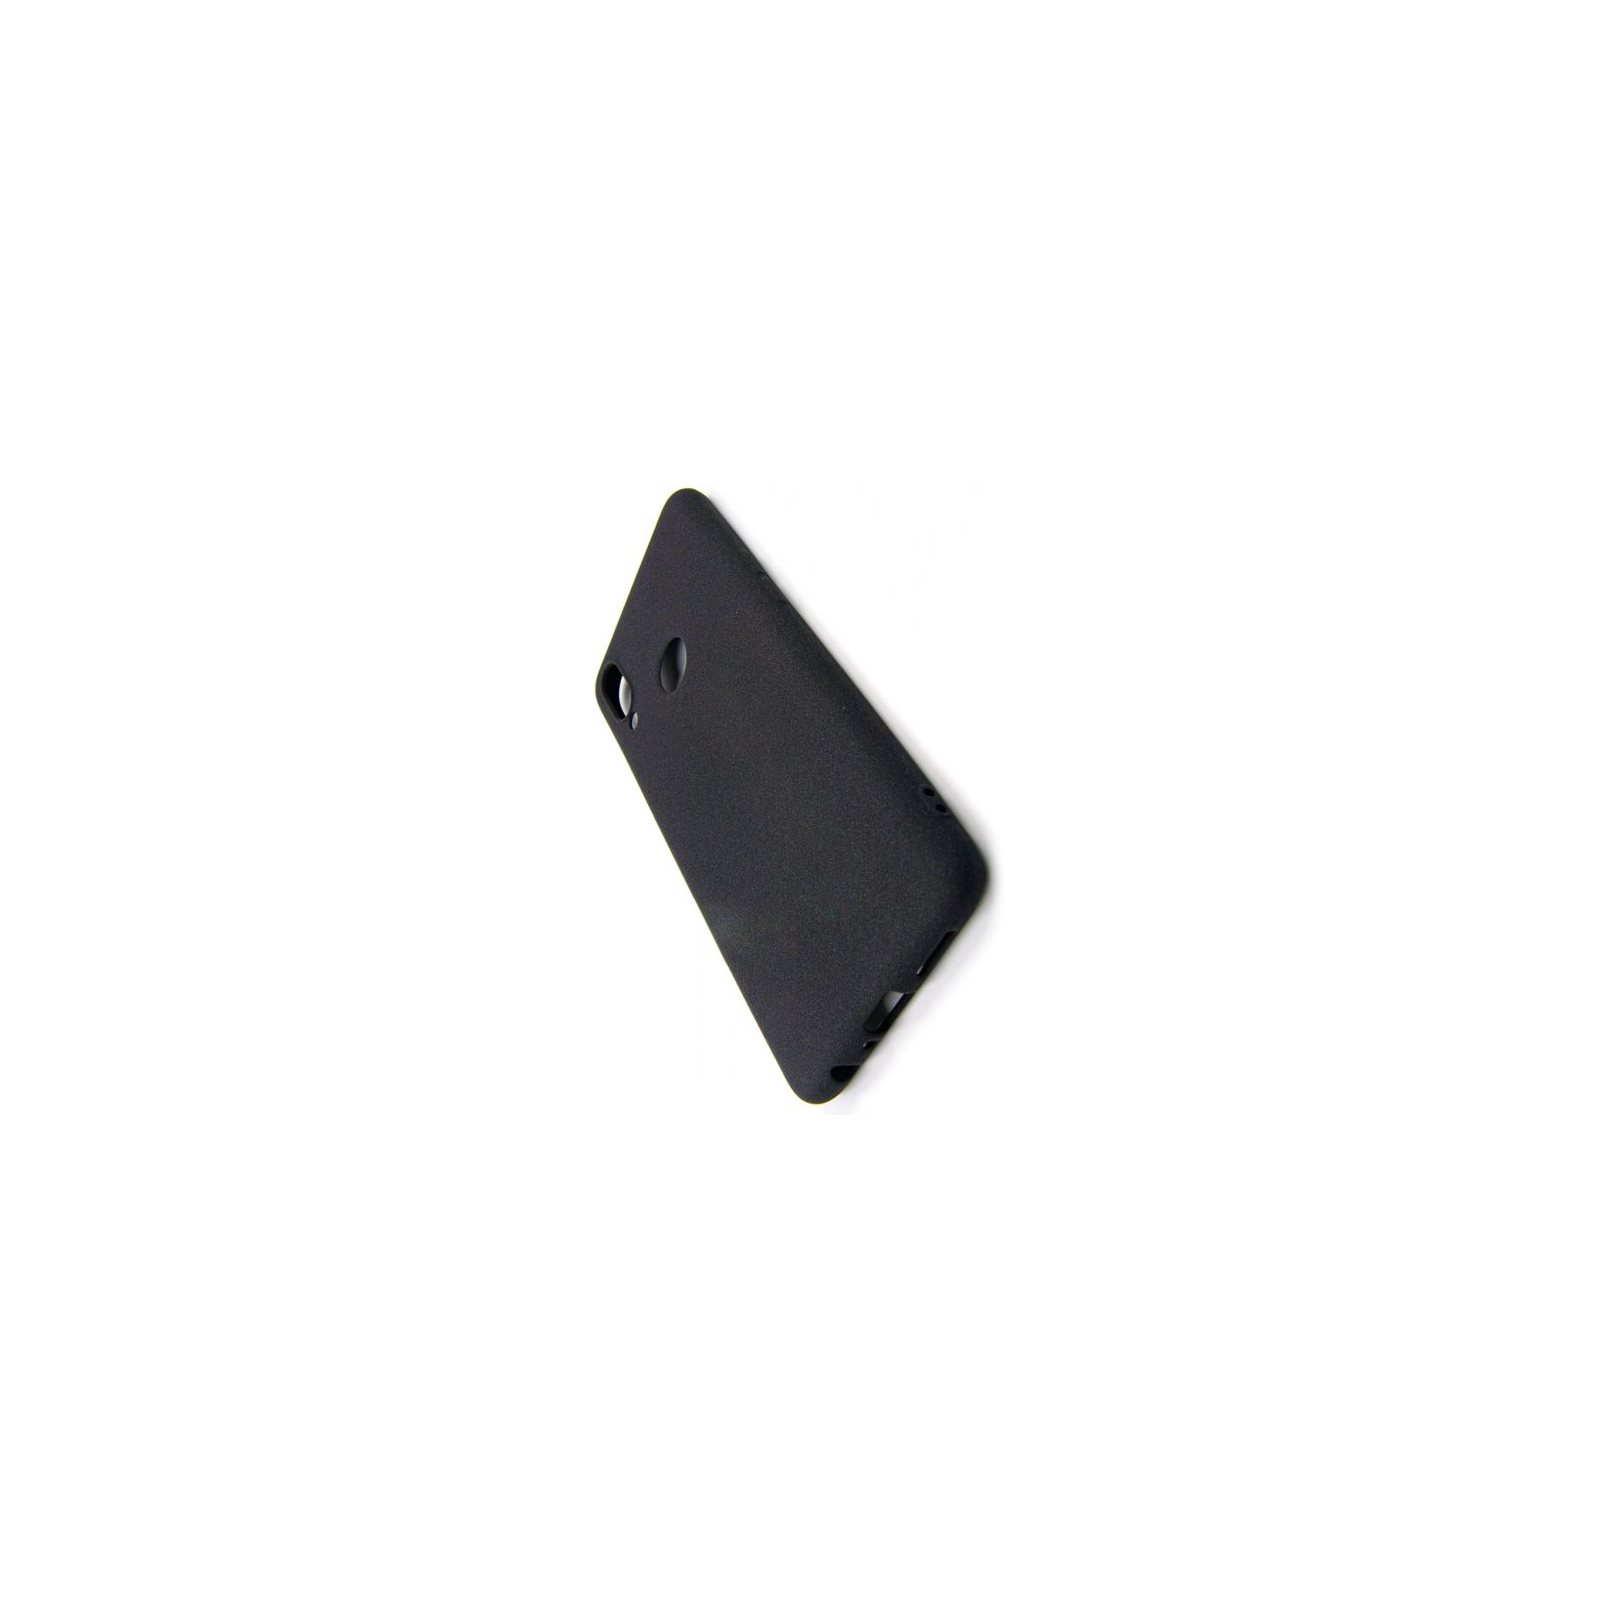 Чехол для мобильного телефона Dengos Carbon Samsung Galaxy A10s, black (DG-TPU-CRBN-01) изображение 2